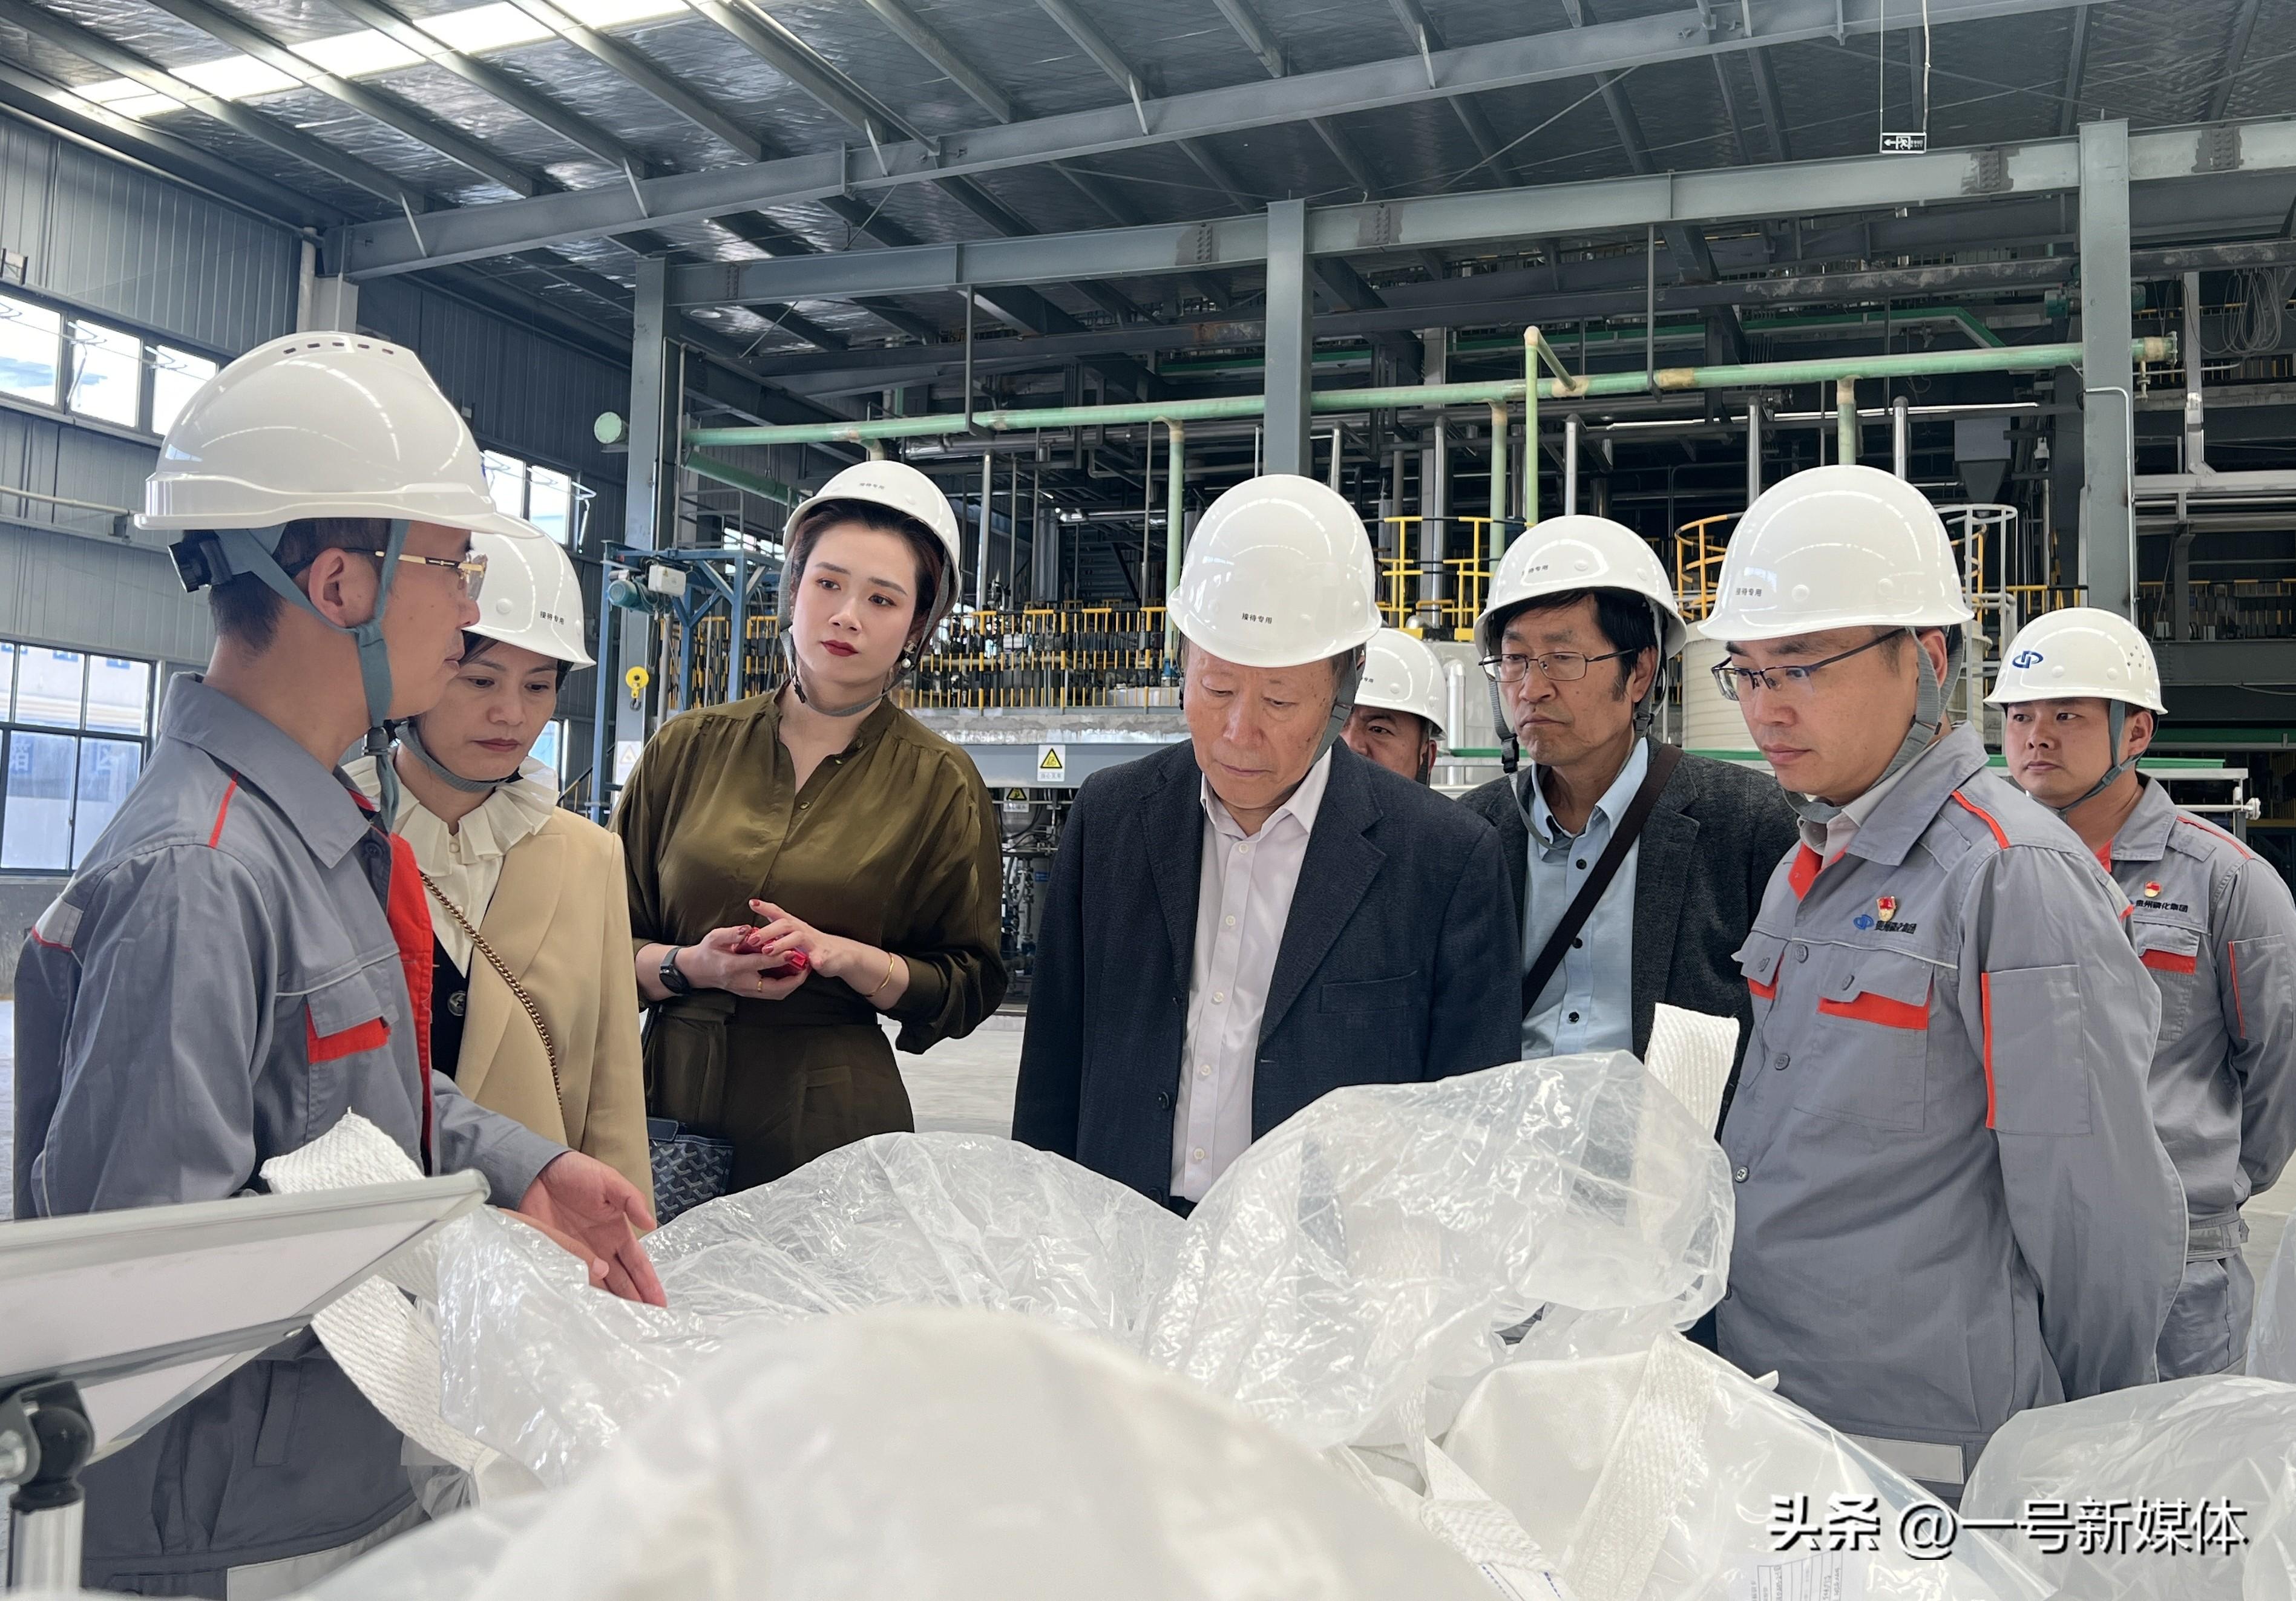 奋力打造全球磷化工领军企业 中化企协调研组来到贵州磷化集团